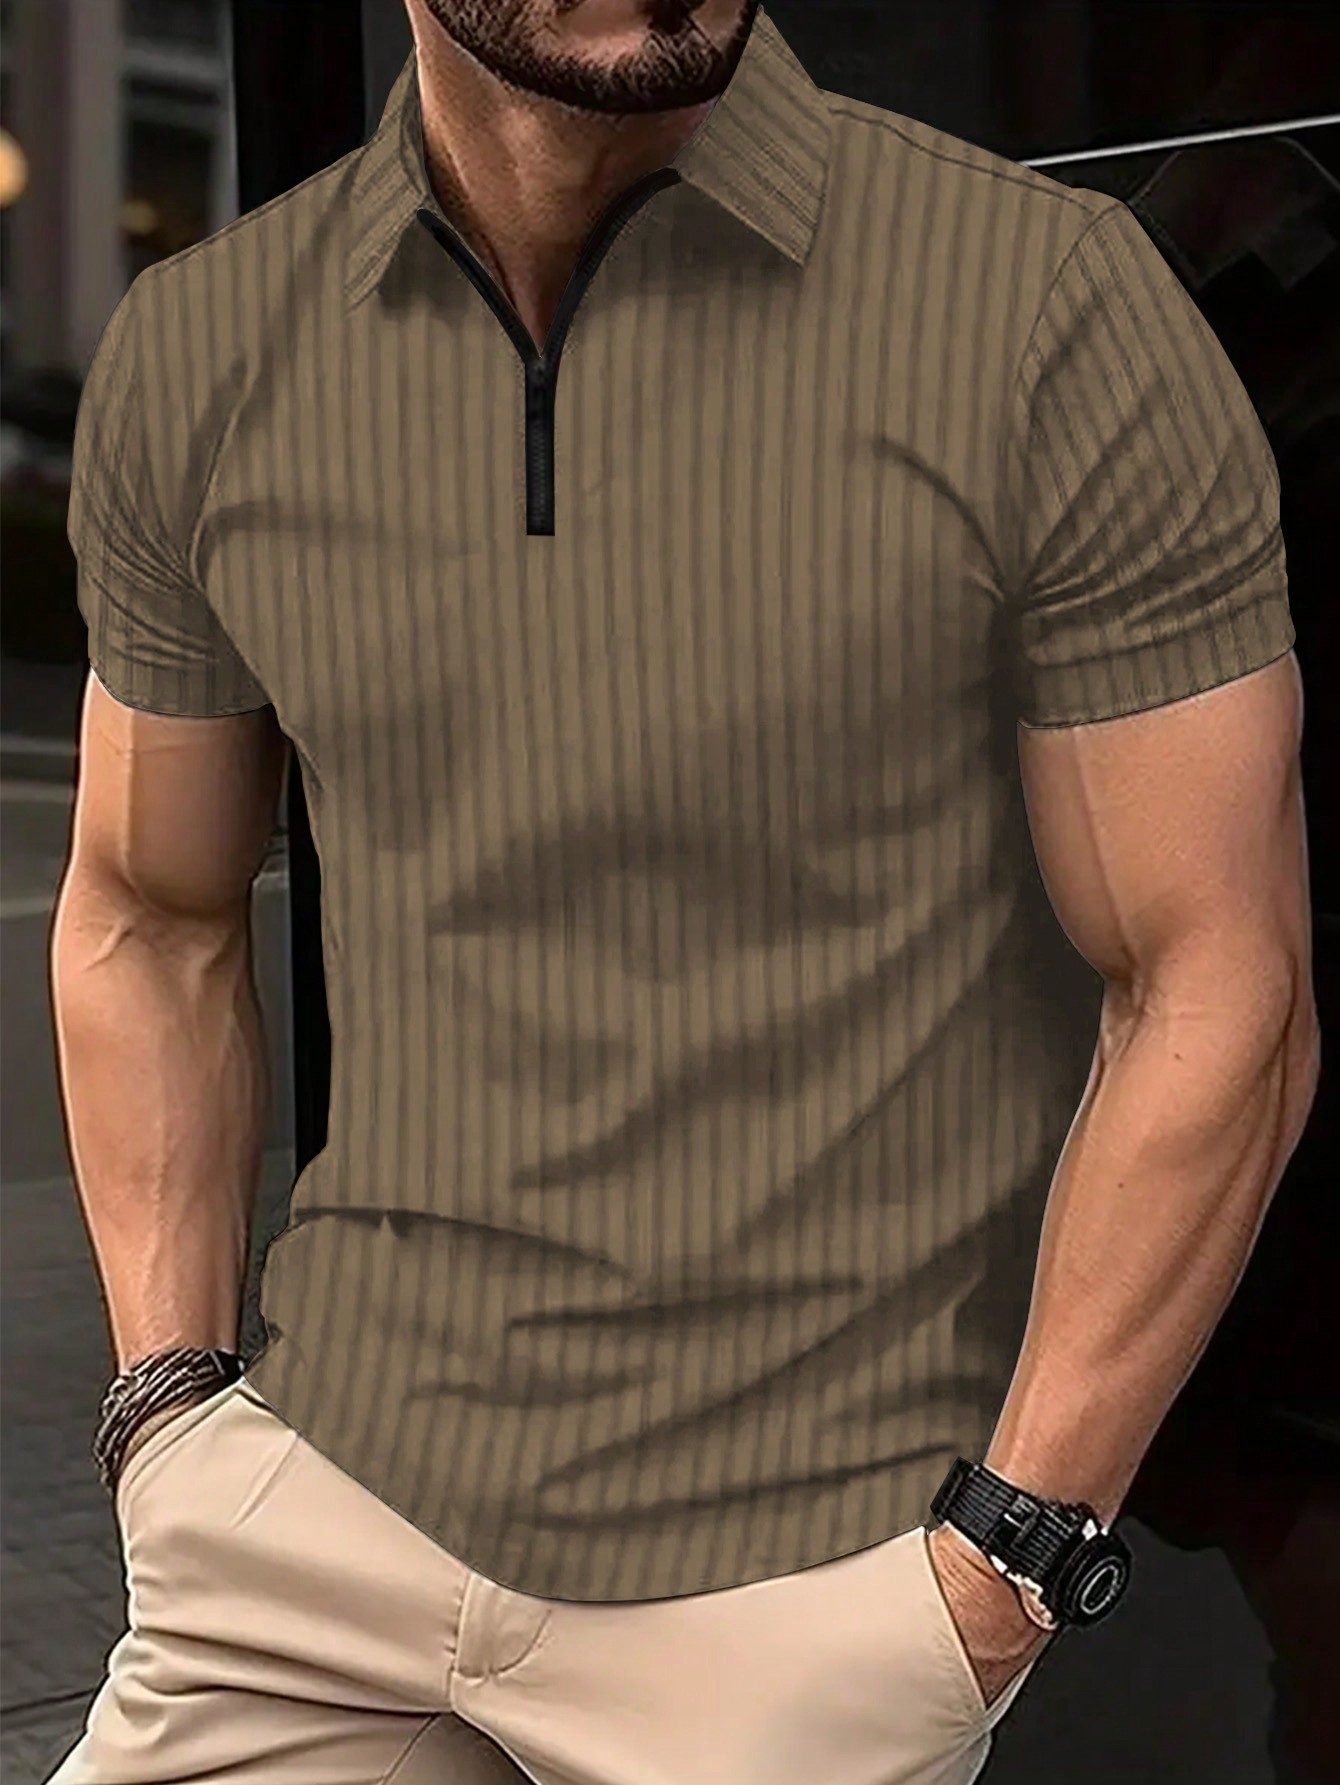 Мужская полосатая рубашка-поло с молнией до половины и короткими рукавами Manfinity Homme больших размеров, абрикос